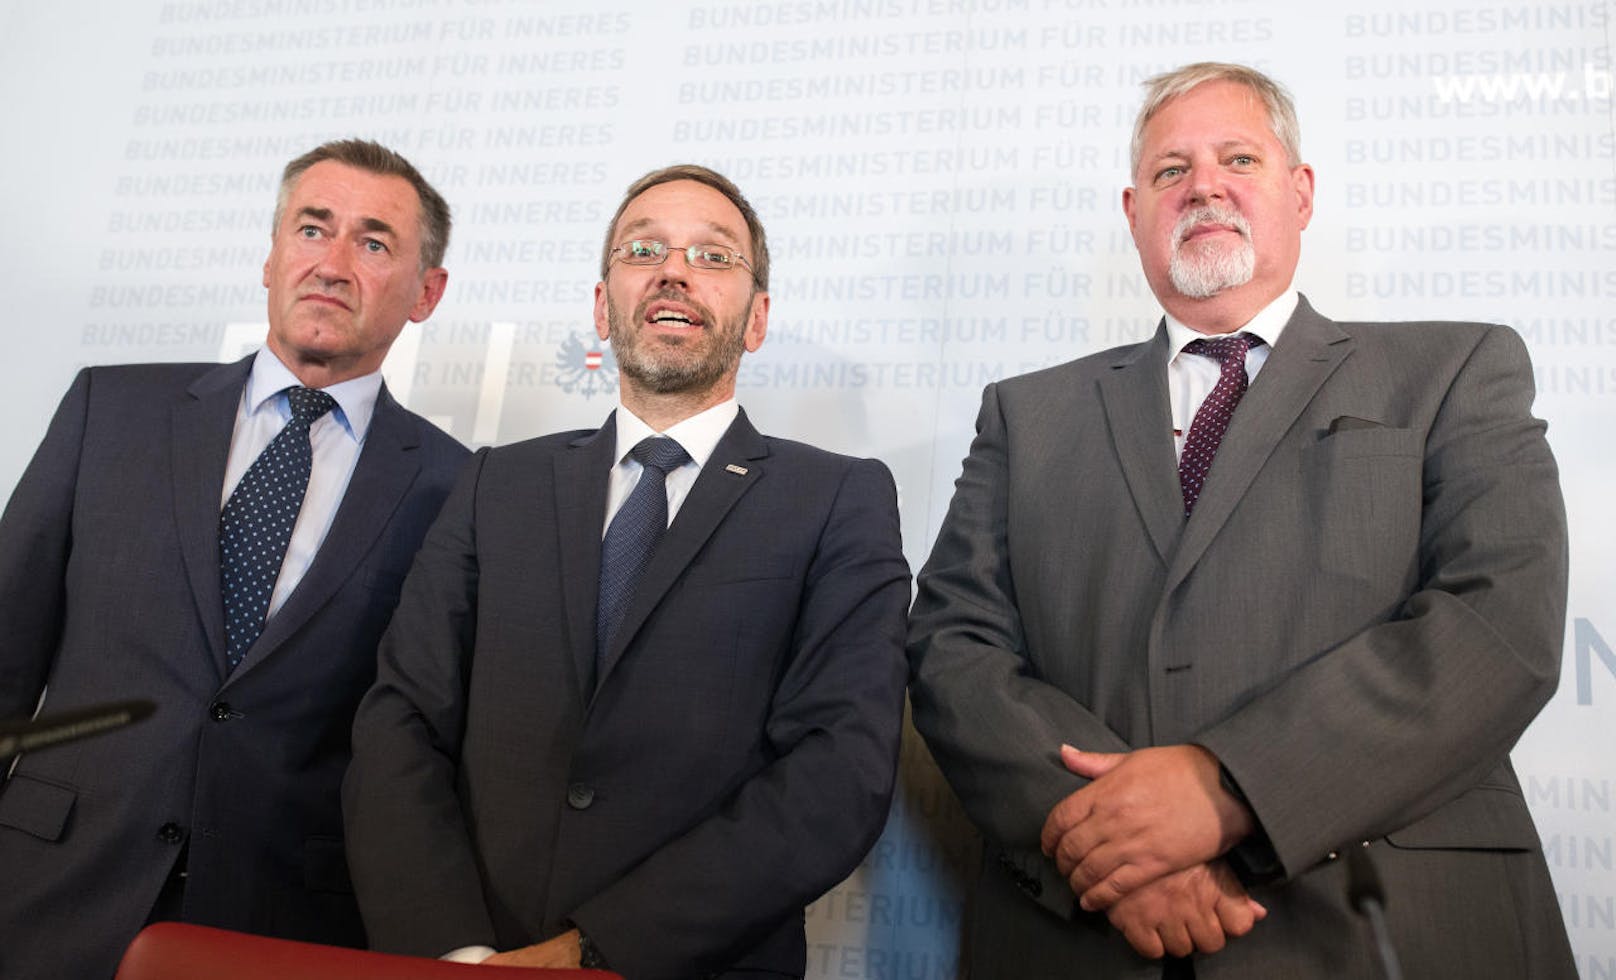 Der stv. Generaldirektor für öffentliche Sicherheit, Franz Lang, Innenminister Herbert Kickl (FPÖ) und BVT-Chef Peter Gridling.